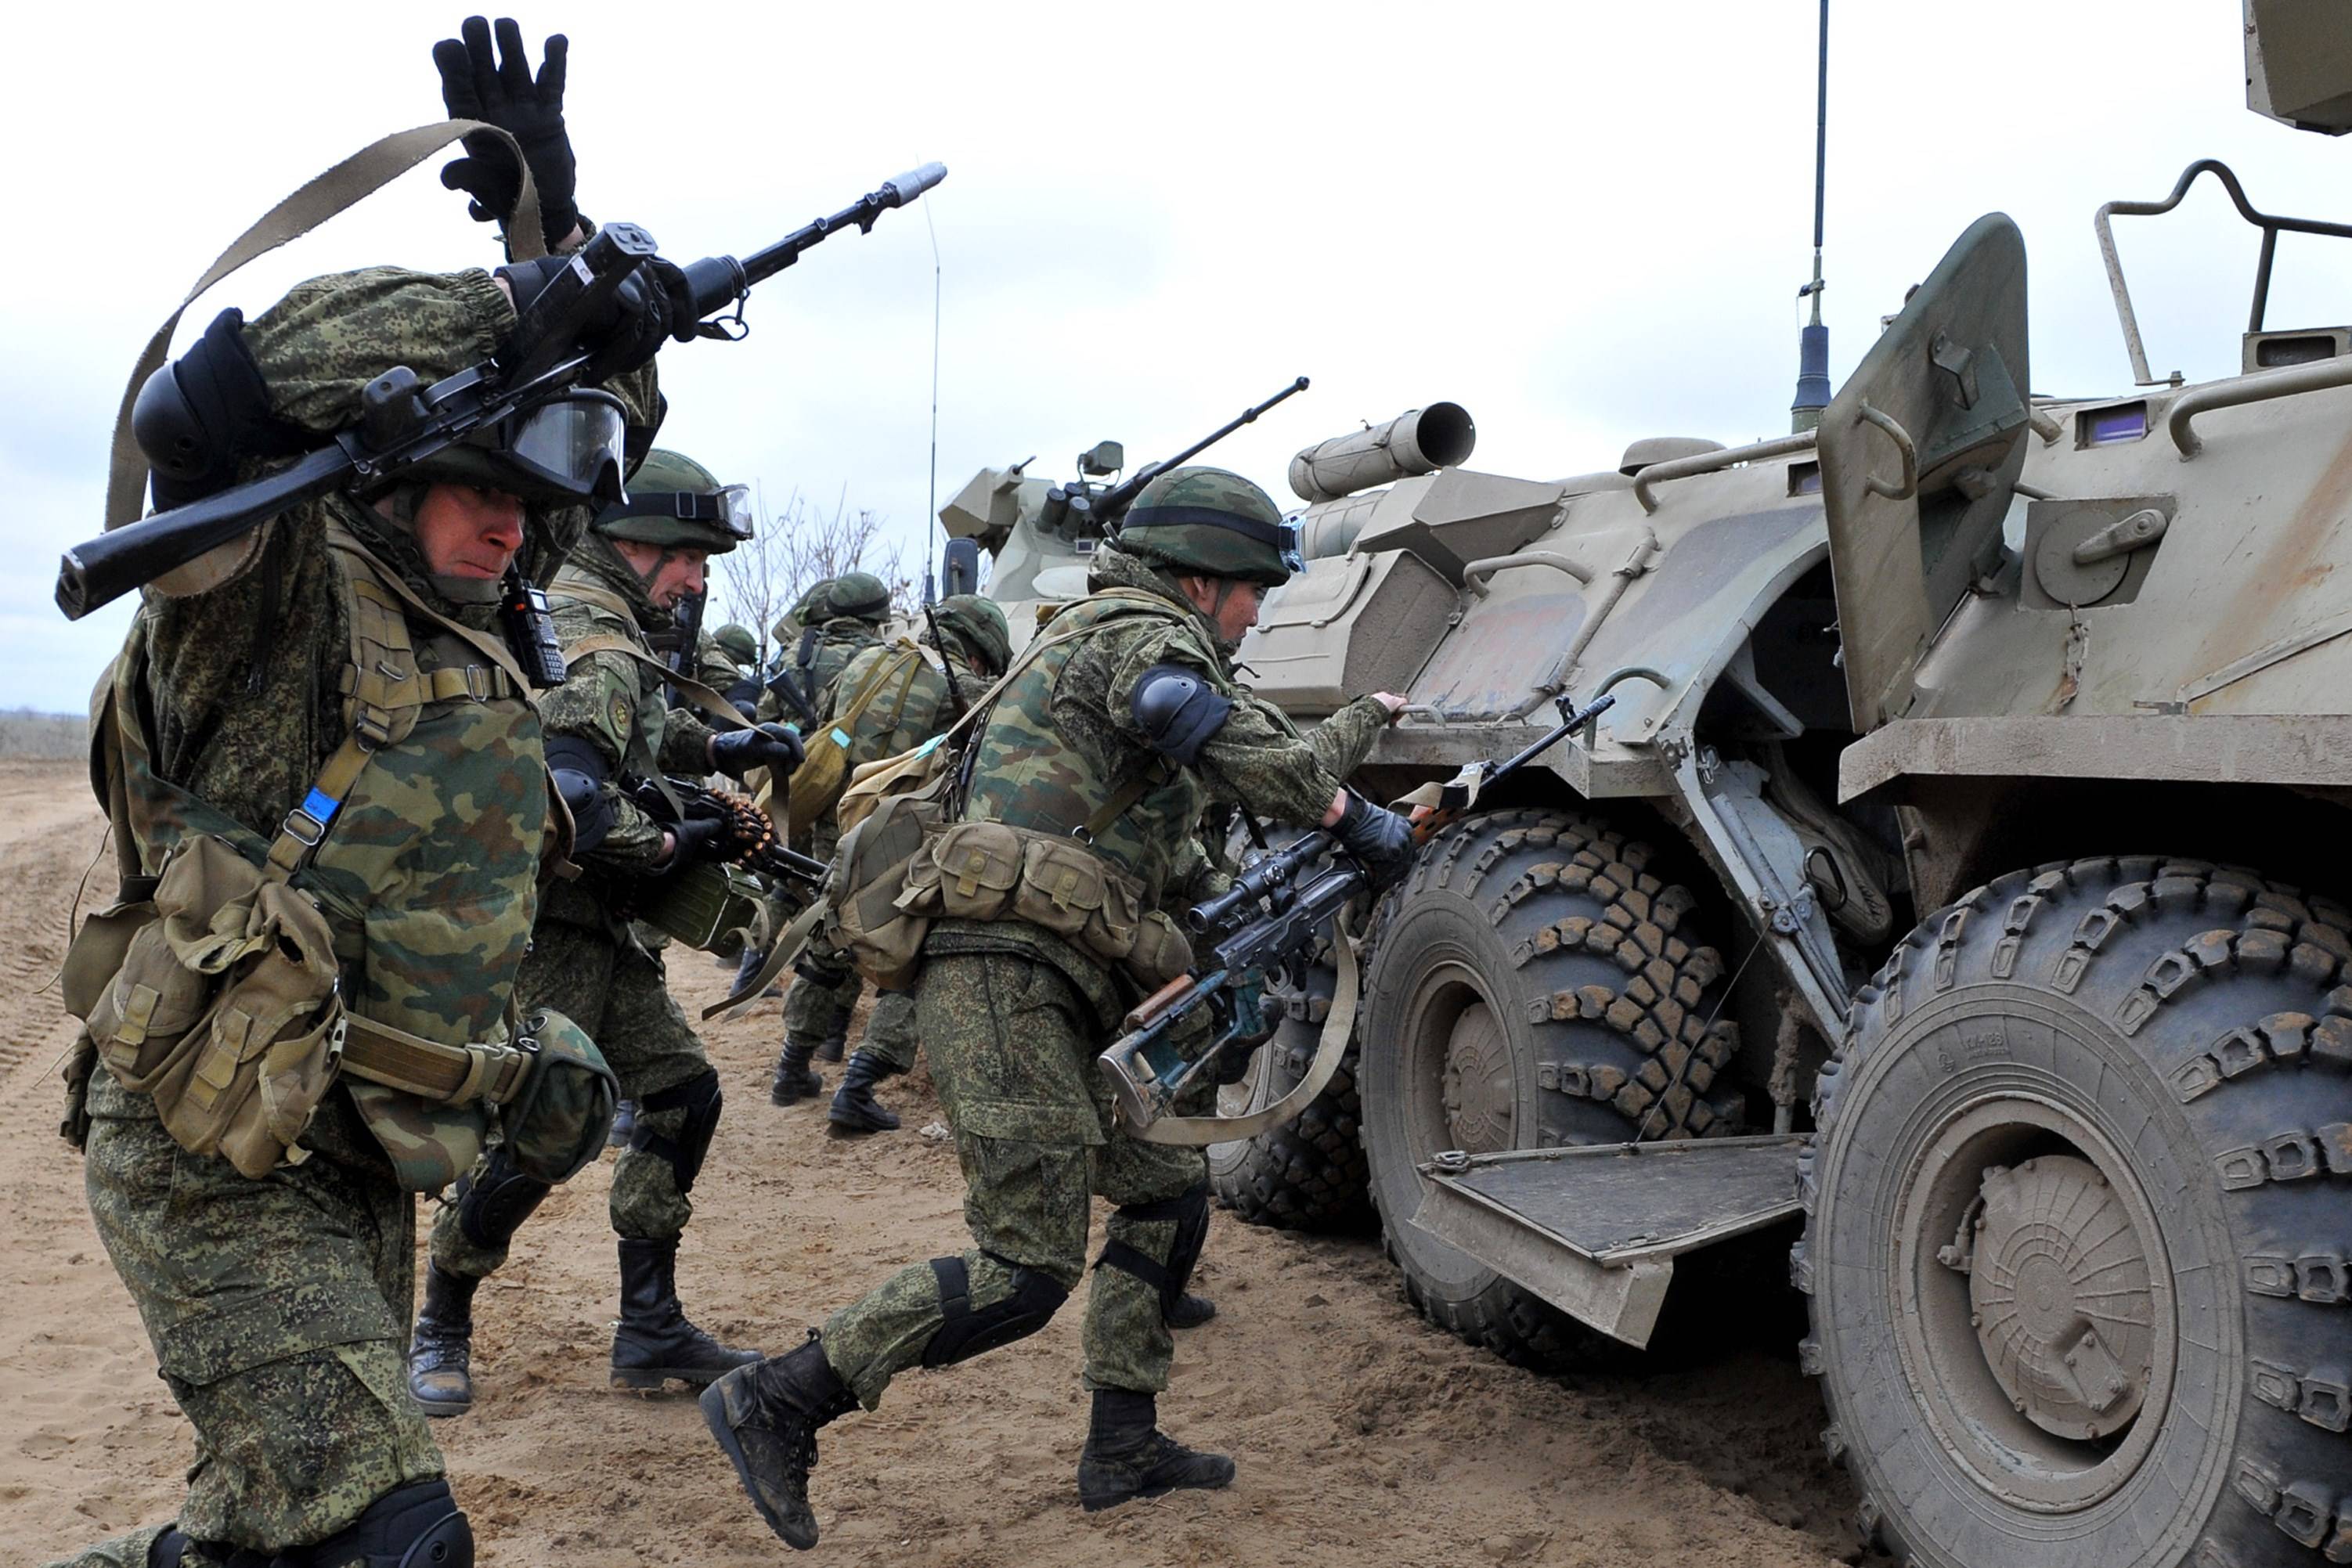 俄罗斯军队在乌克兰边境集结了有史以来最大规模的军事力量